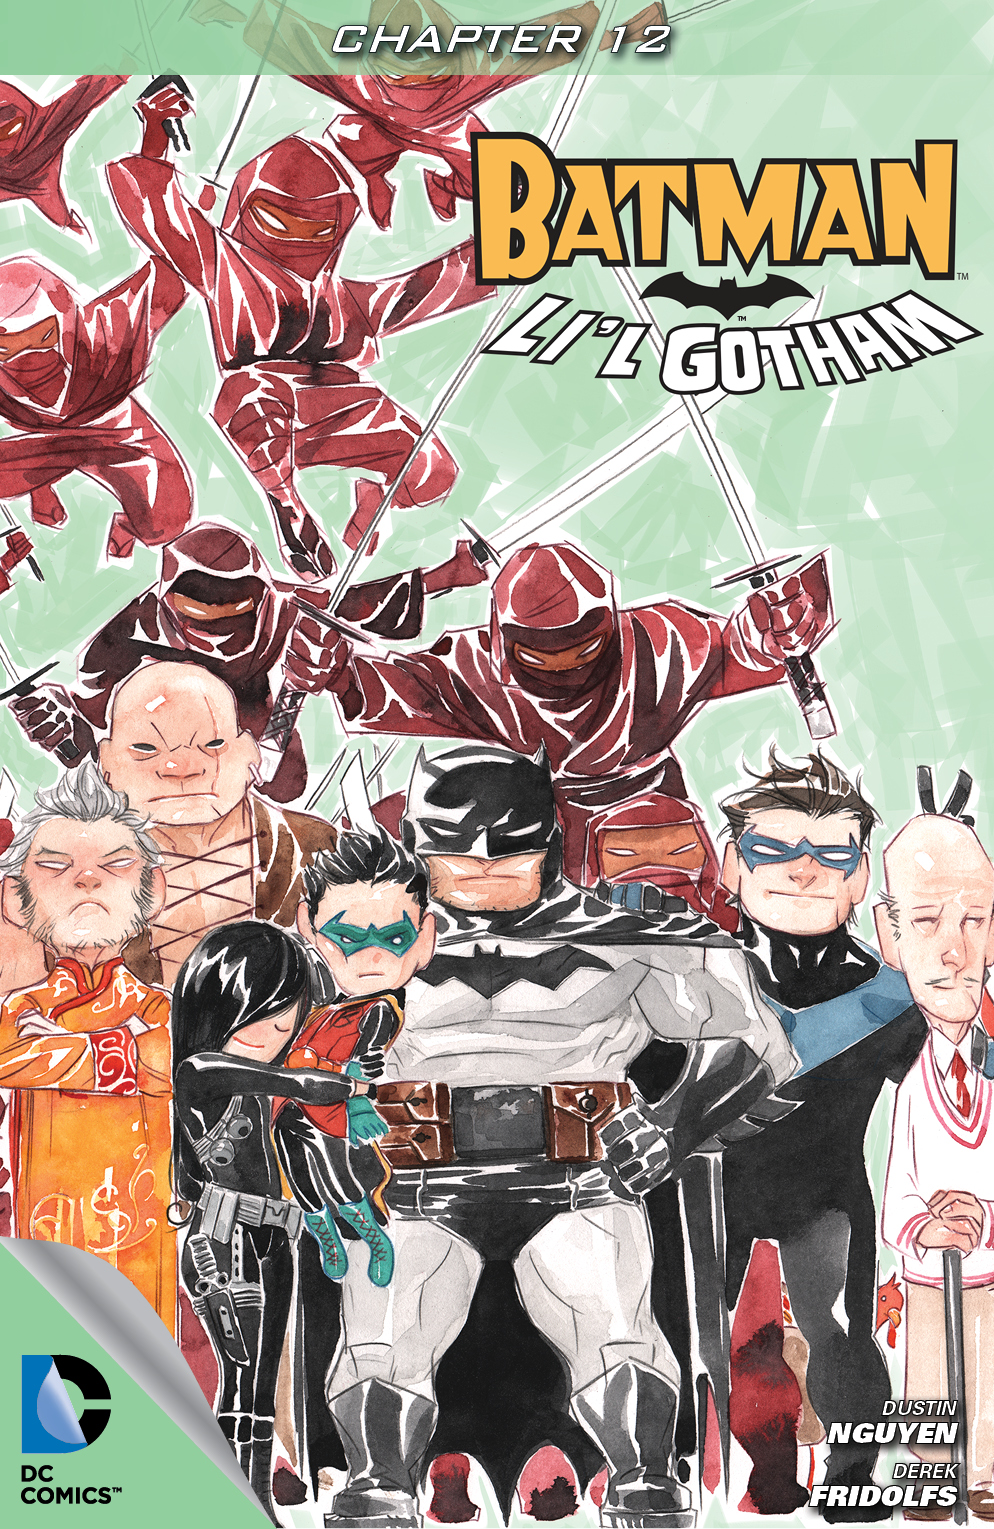 Batman: Li'l Gotham #12 preview images